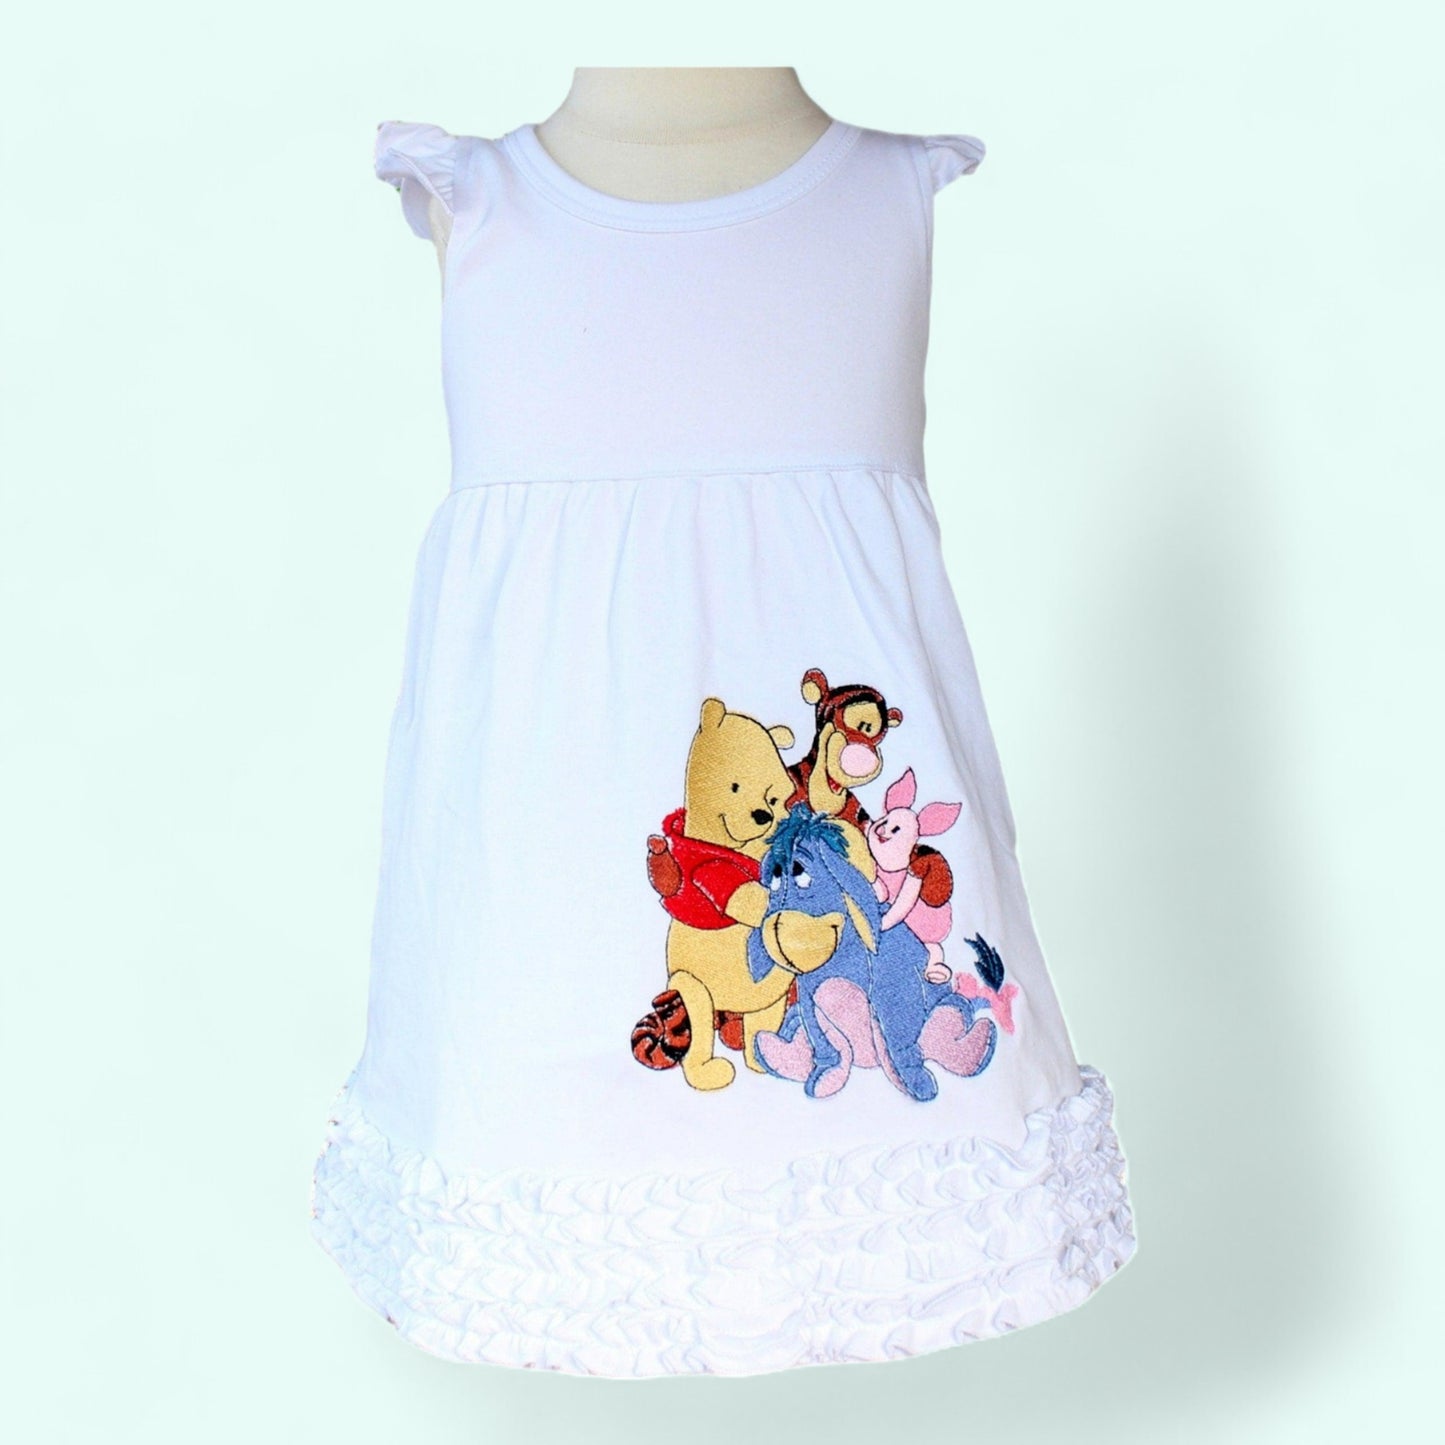 Winnie the pooh dress Pooh Dress